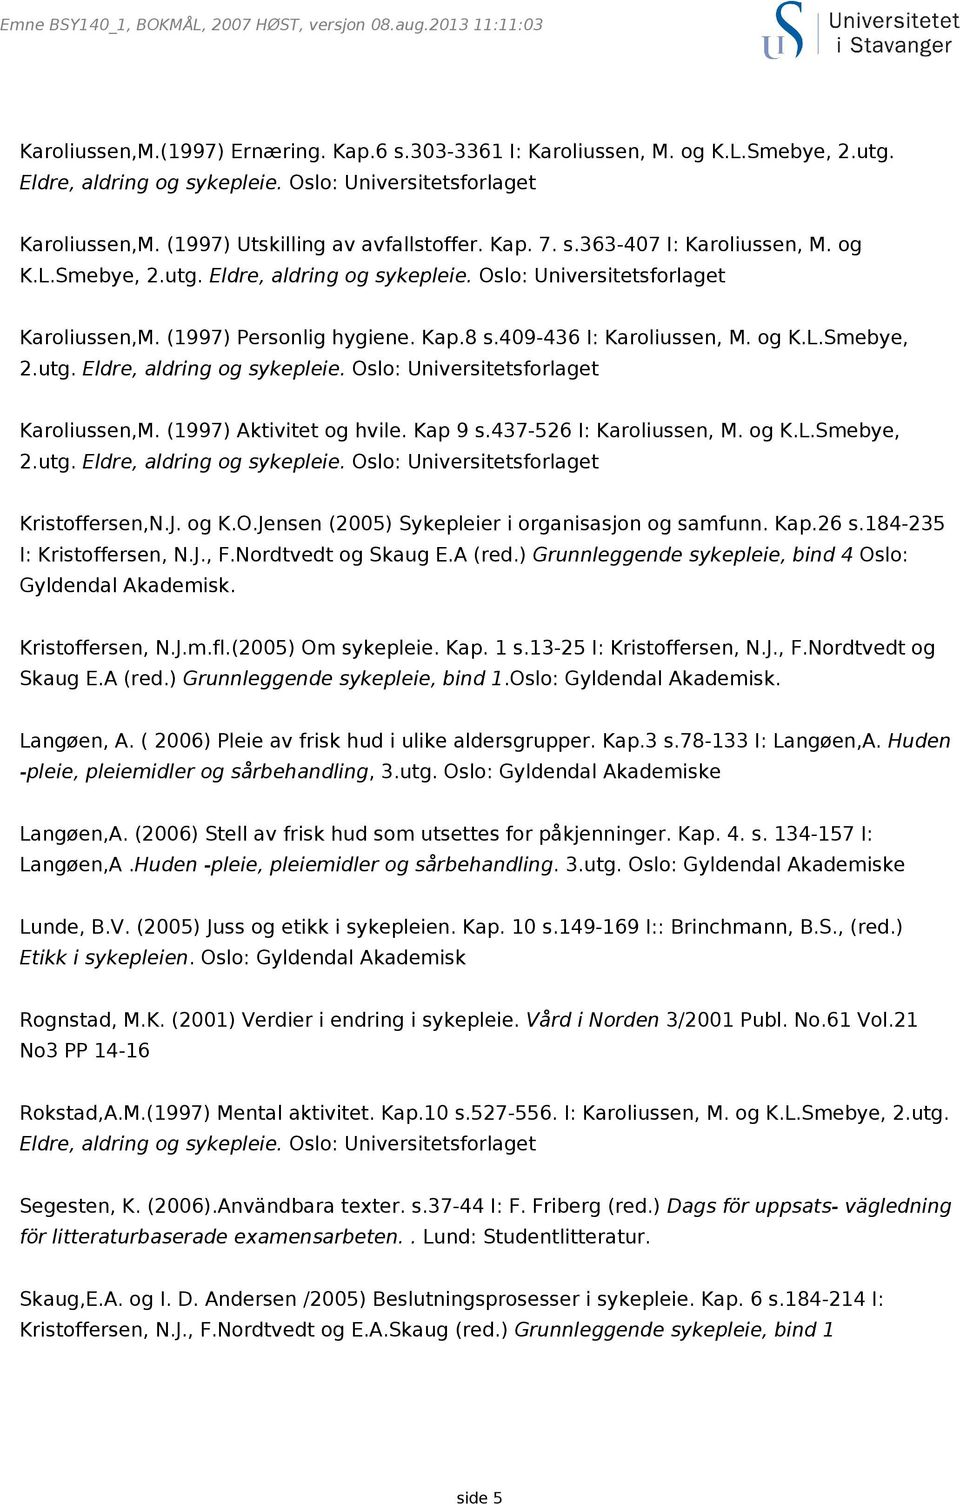 409-436 I: Karoliussen, M. og K.L.Smebye, Karoliussen,M. (1997) Aktivitet og hvile. Kap 9 s.437-526 I: Karoliussen, M. og K.L.Smebye, Kristoffersen,N.J. og K.O.